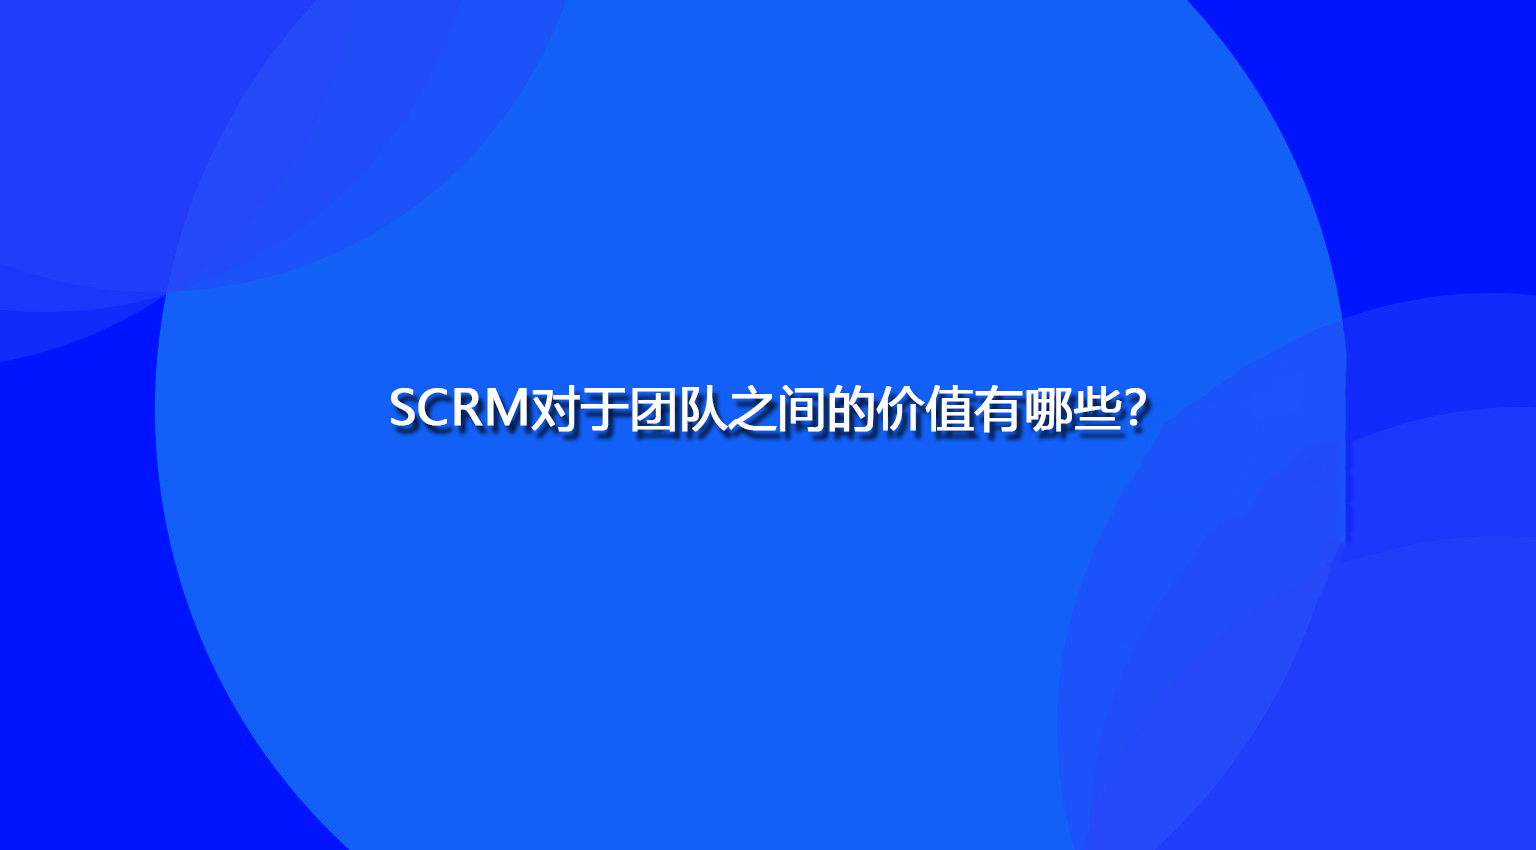 SCRM对于团队之间的价值有哪些？